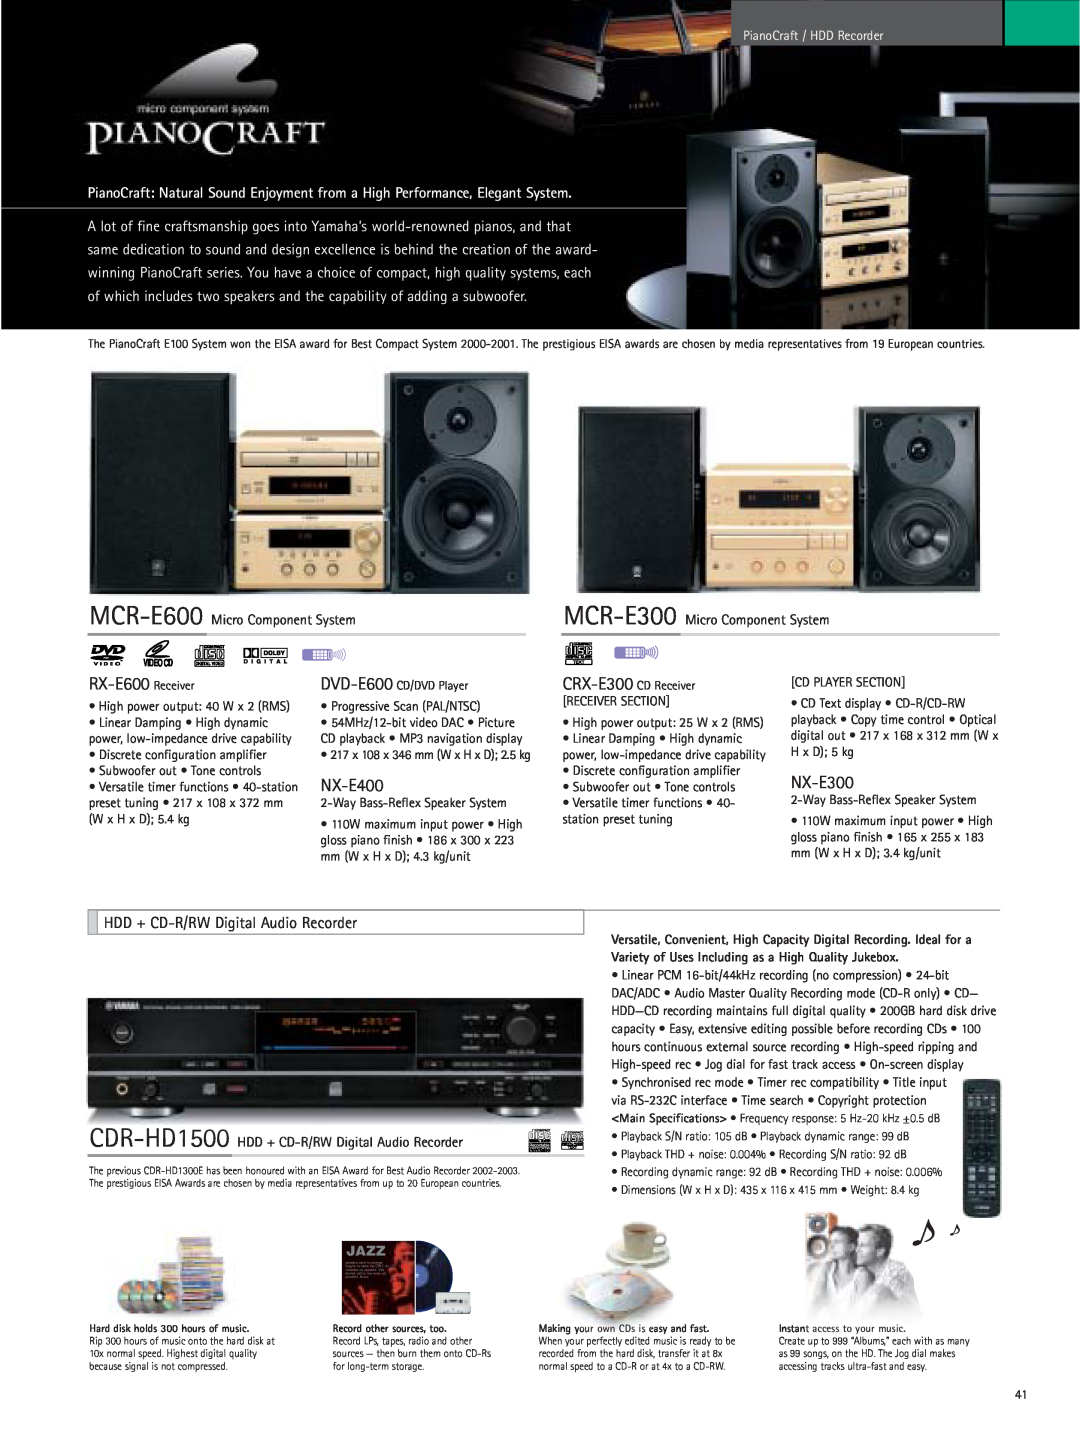 Yamaha RX-Z9 RX-E600 Receiver, NX-E400, NX-E300, HDD + CD-R/RWDigital Audio Recorder, MCR-E600 Micro Component System 